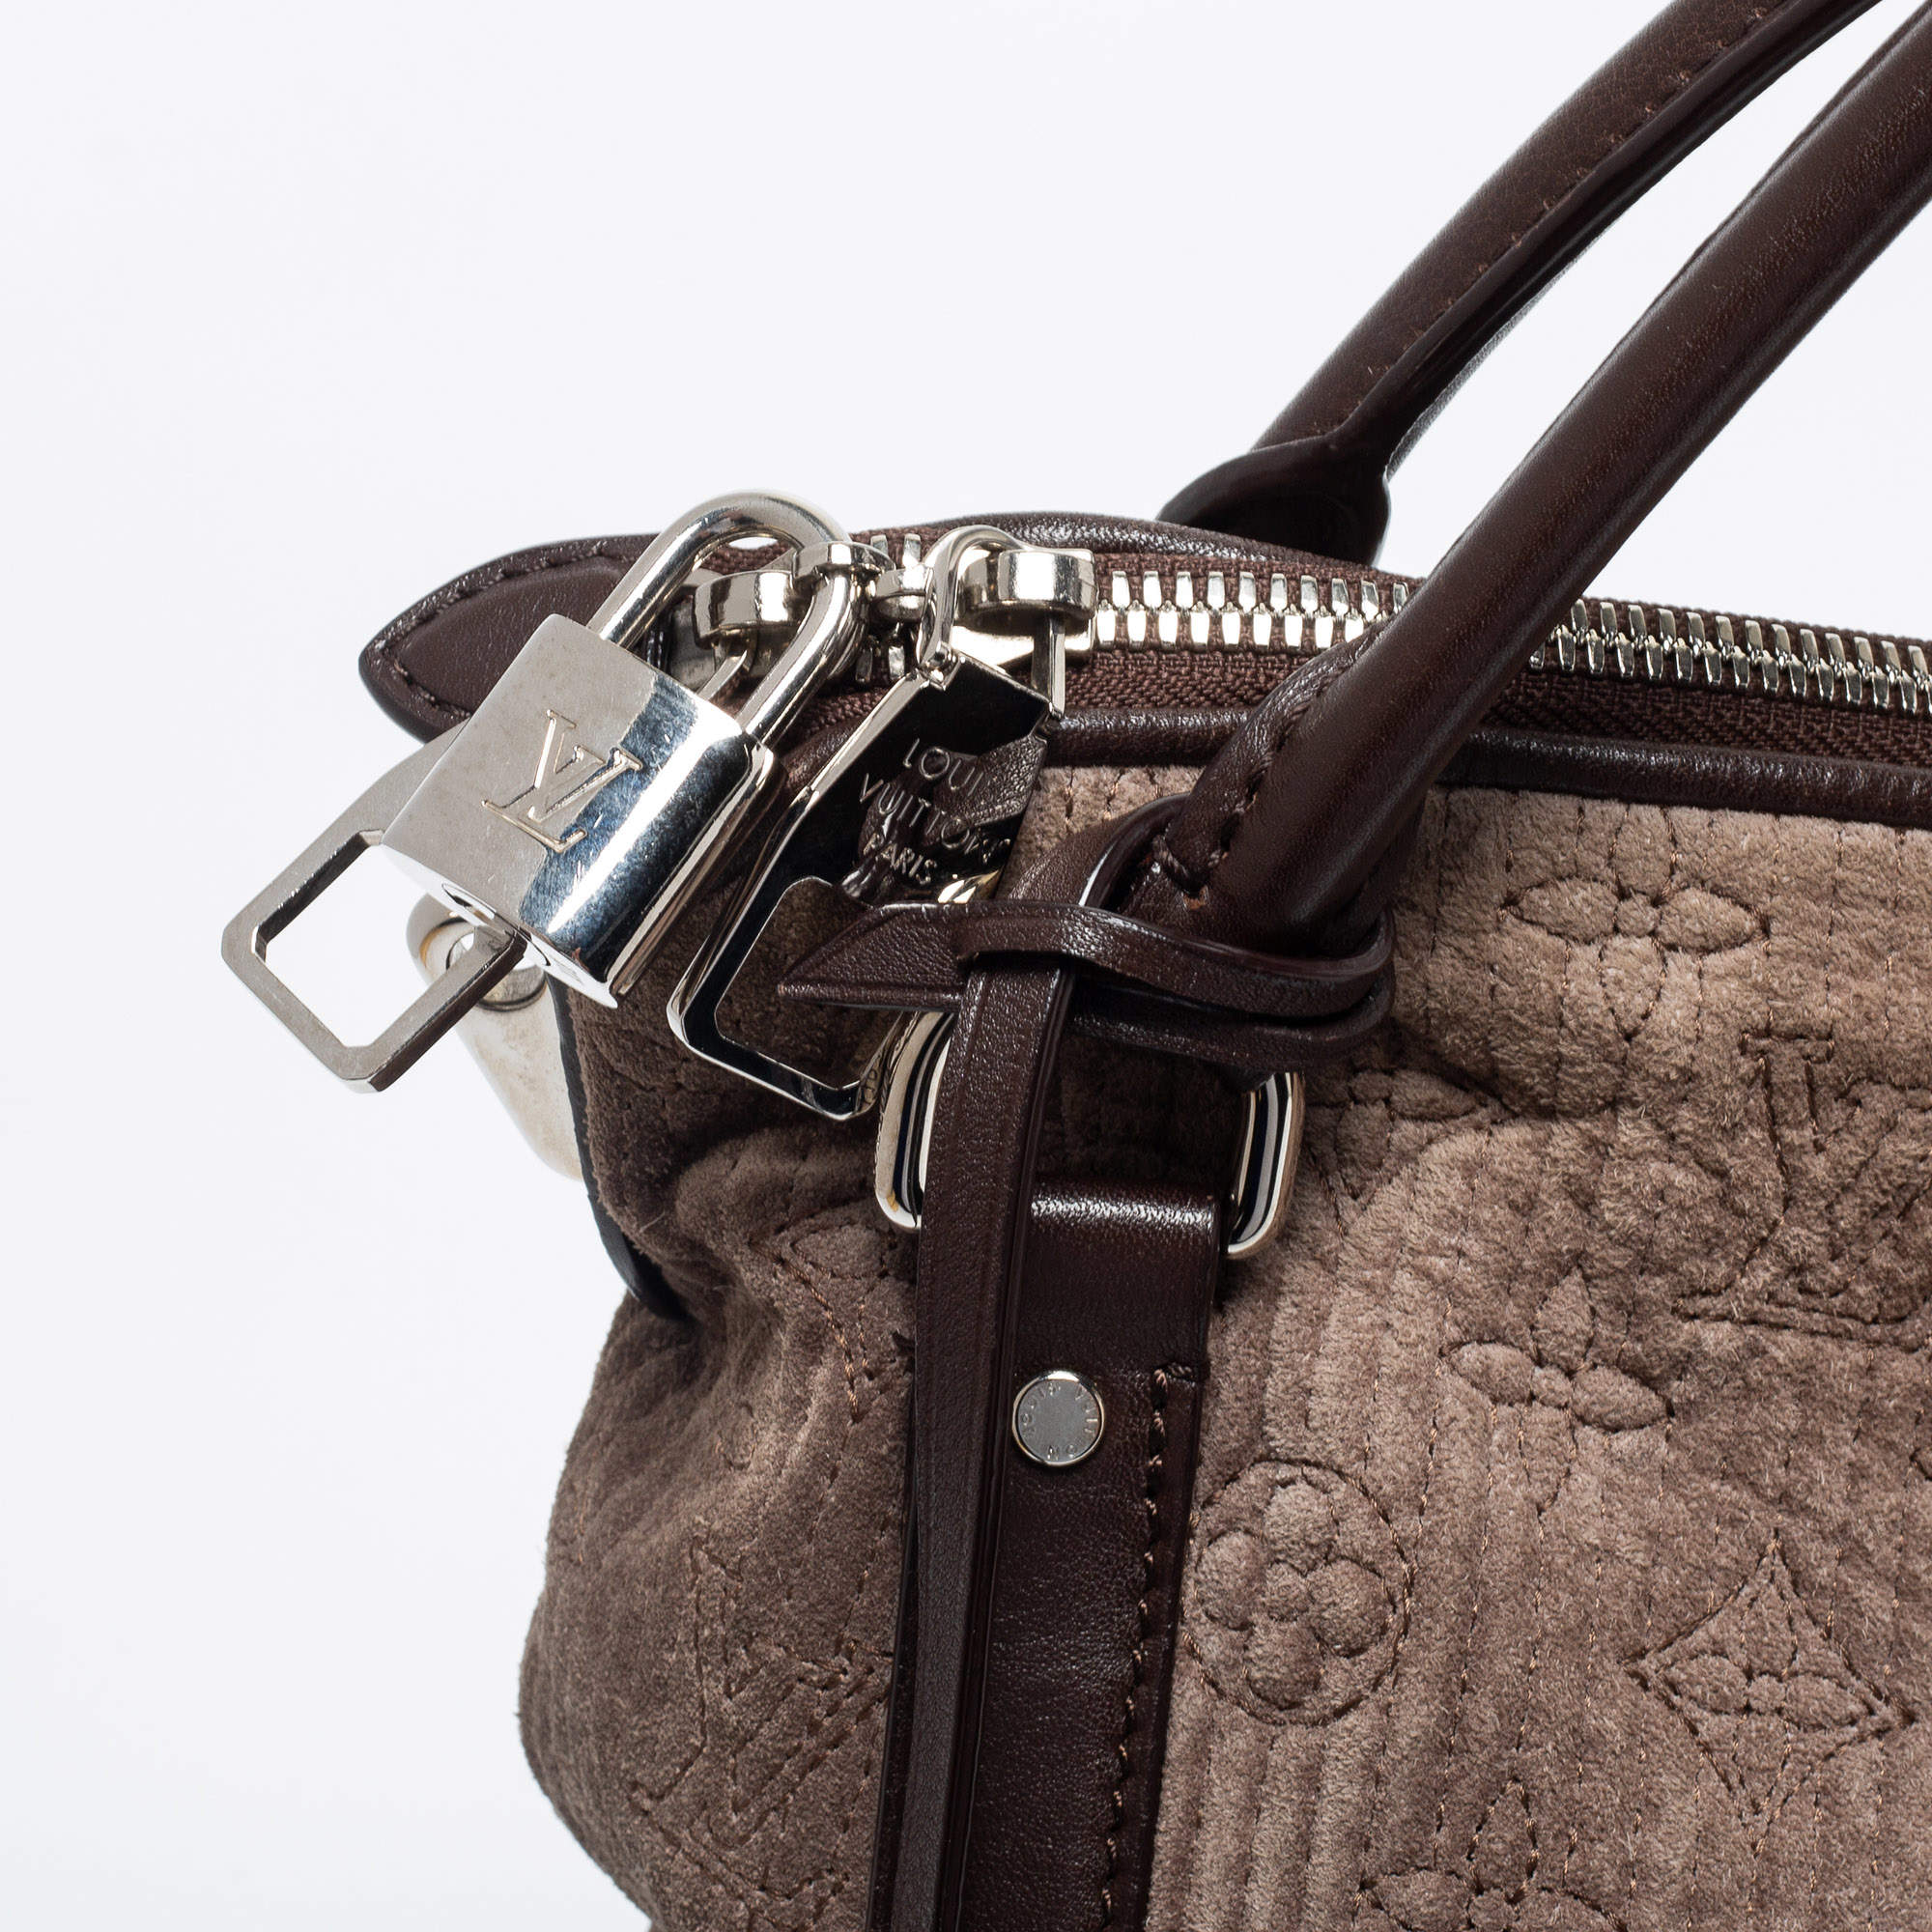 Louis Vuitton Gris Antheia Monogram Leather Ixia PM Bag 235lvs56